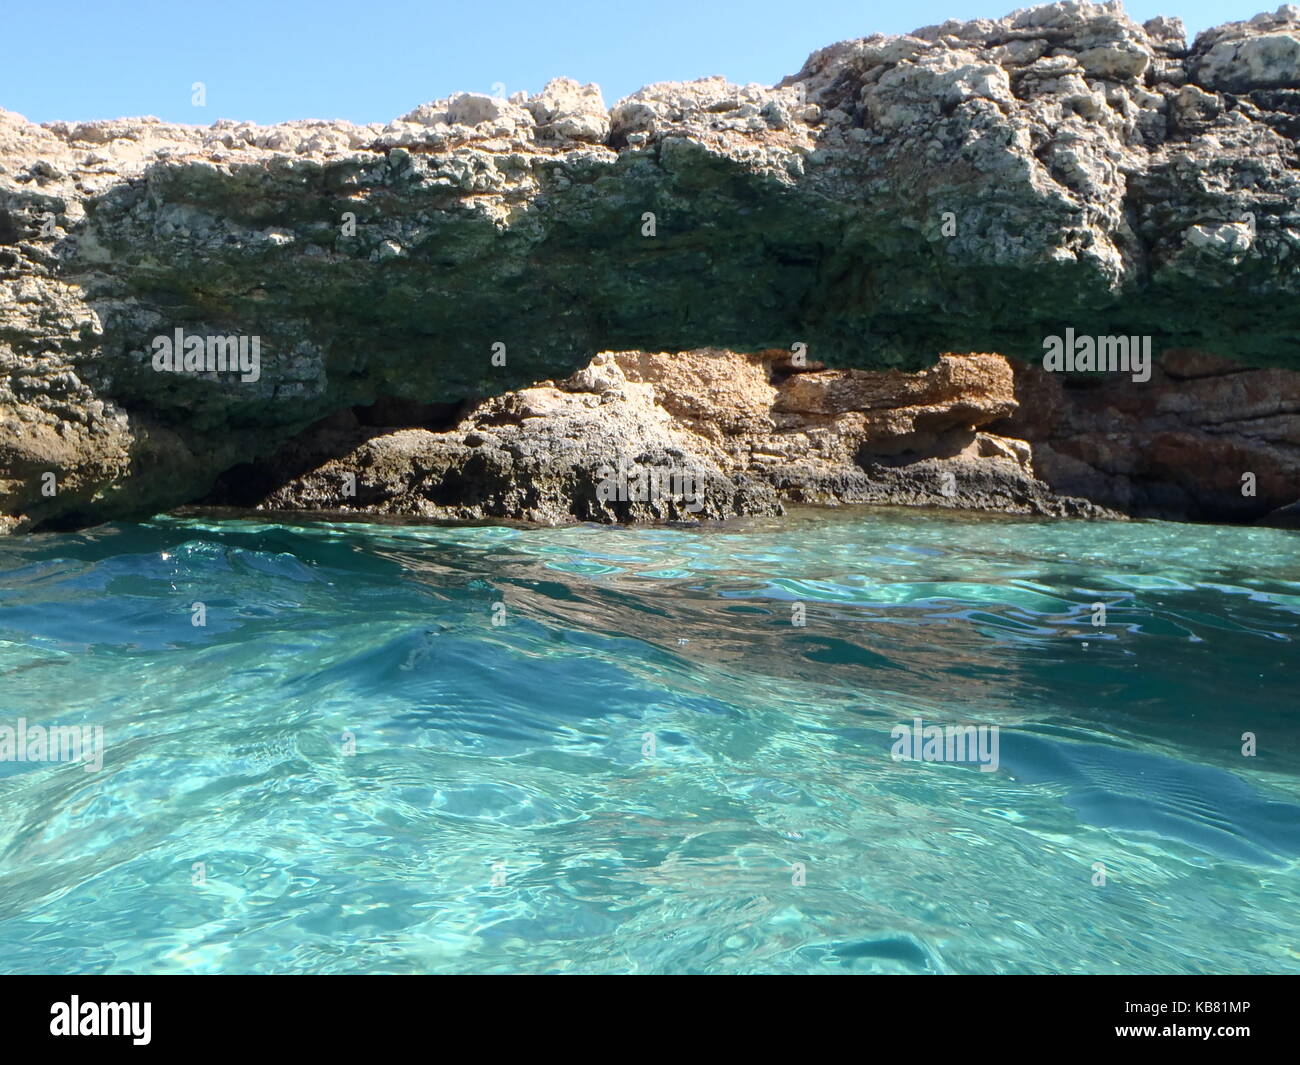 Ein Foto von dem türkisfarbenen kristallklaren Wasser der Blue Lagoon, Malta, mit weißem Sand und einem Felsvorsprung Bogen über das Wasser und blauem Himmel Stockfoto